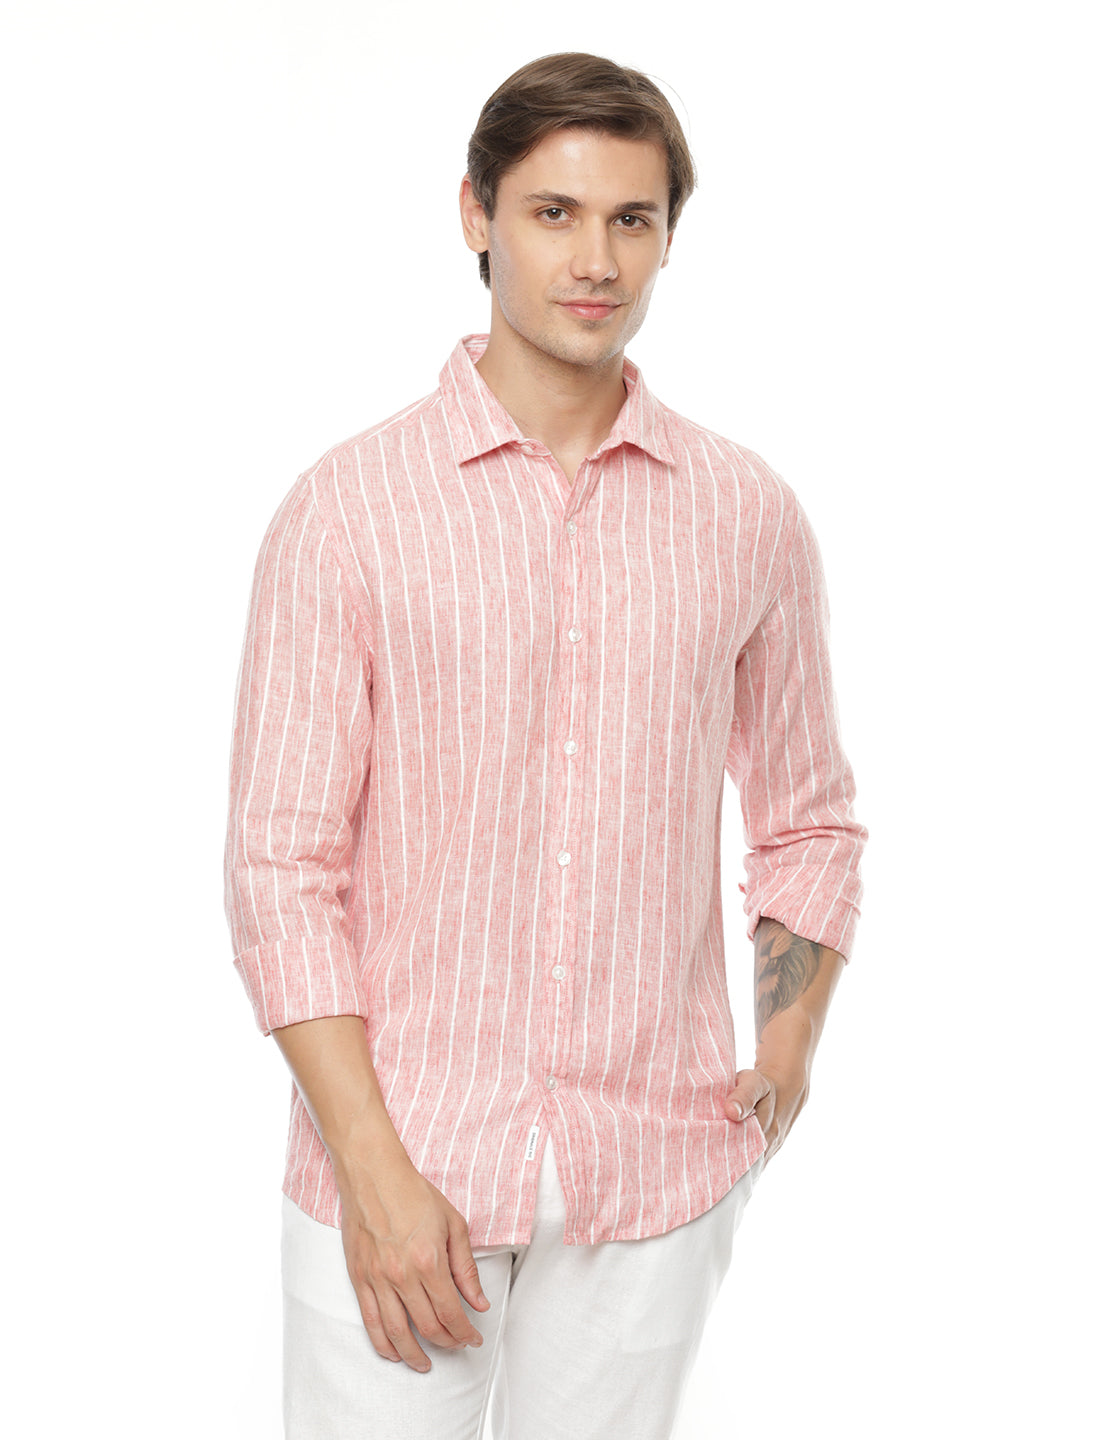 Bubble Gum Pink Stripes Shirt for Men